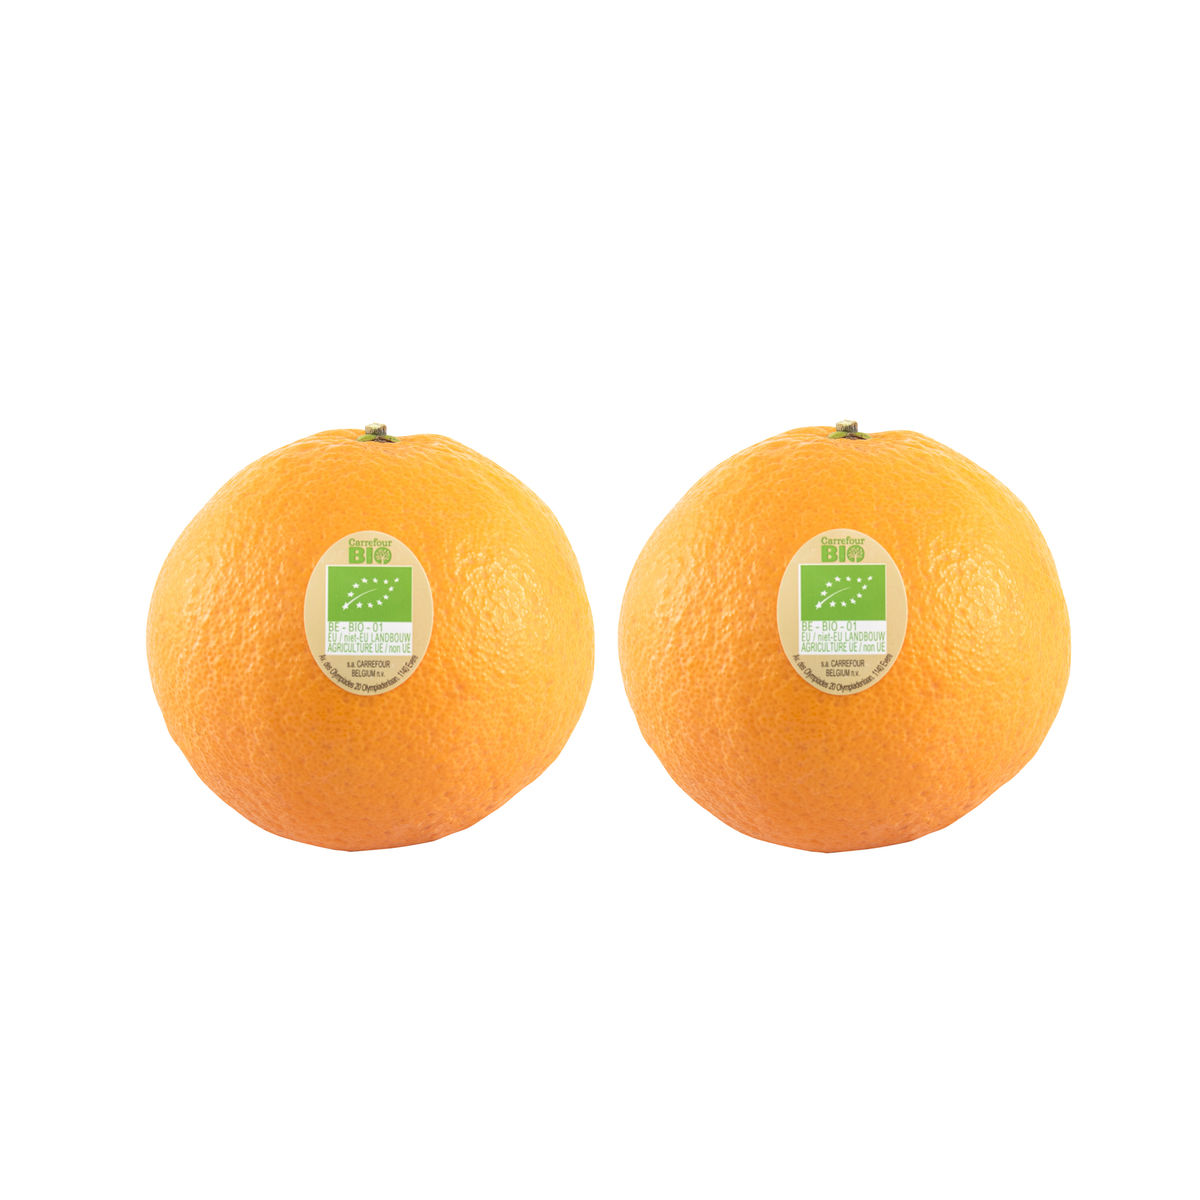 Sinaasappels 2 stuks | Site